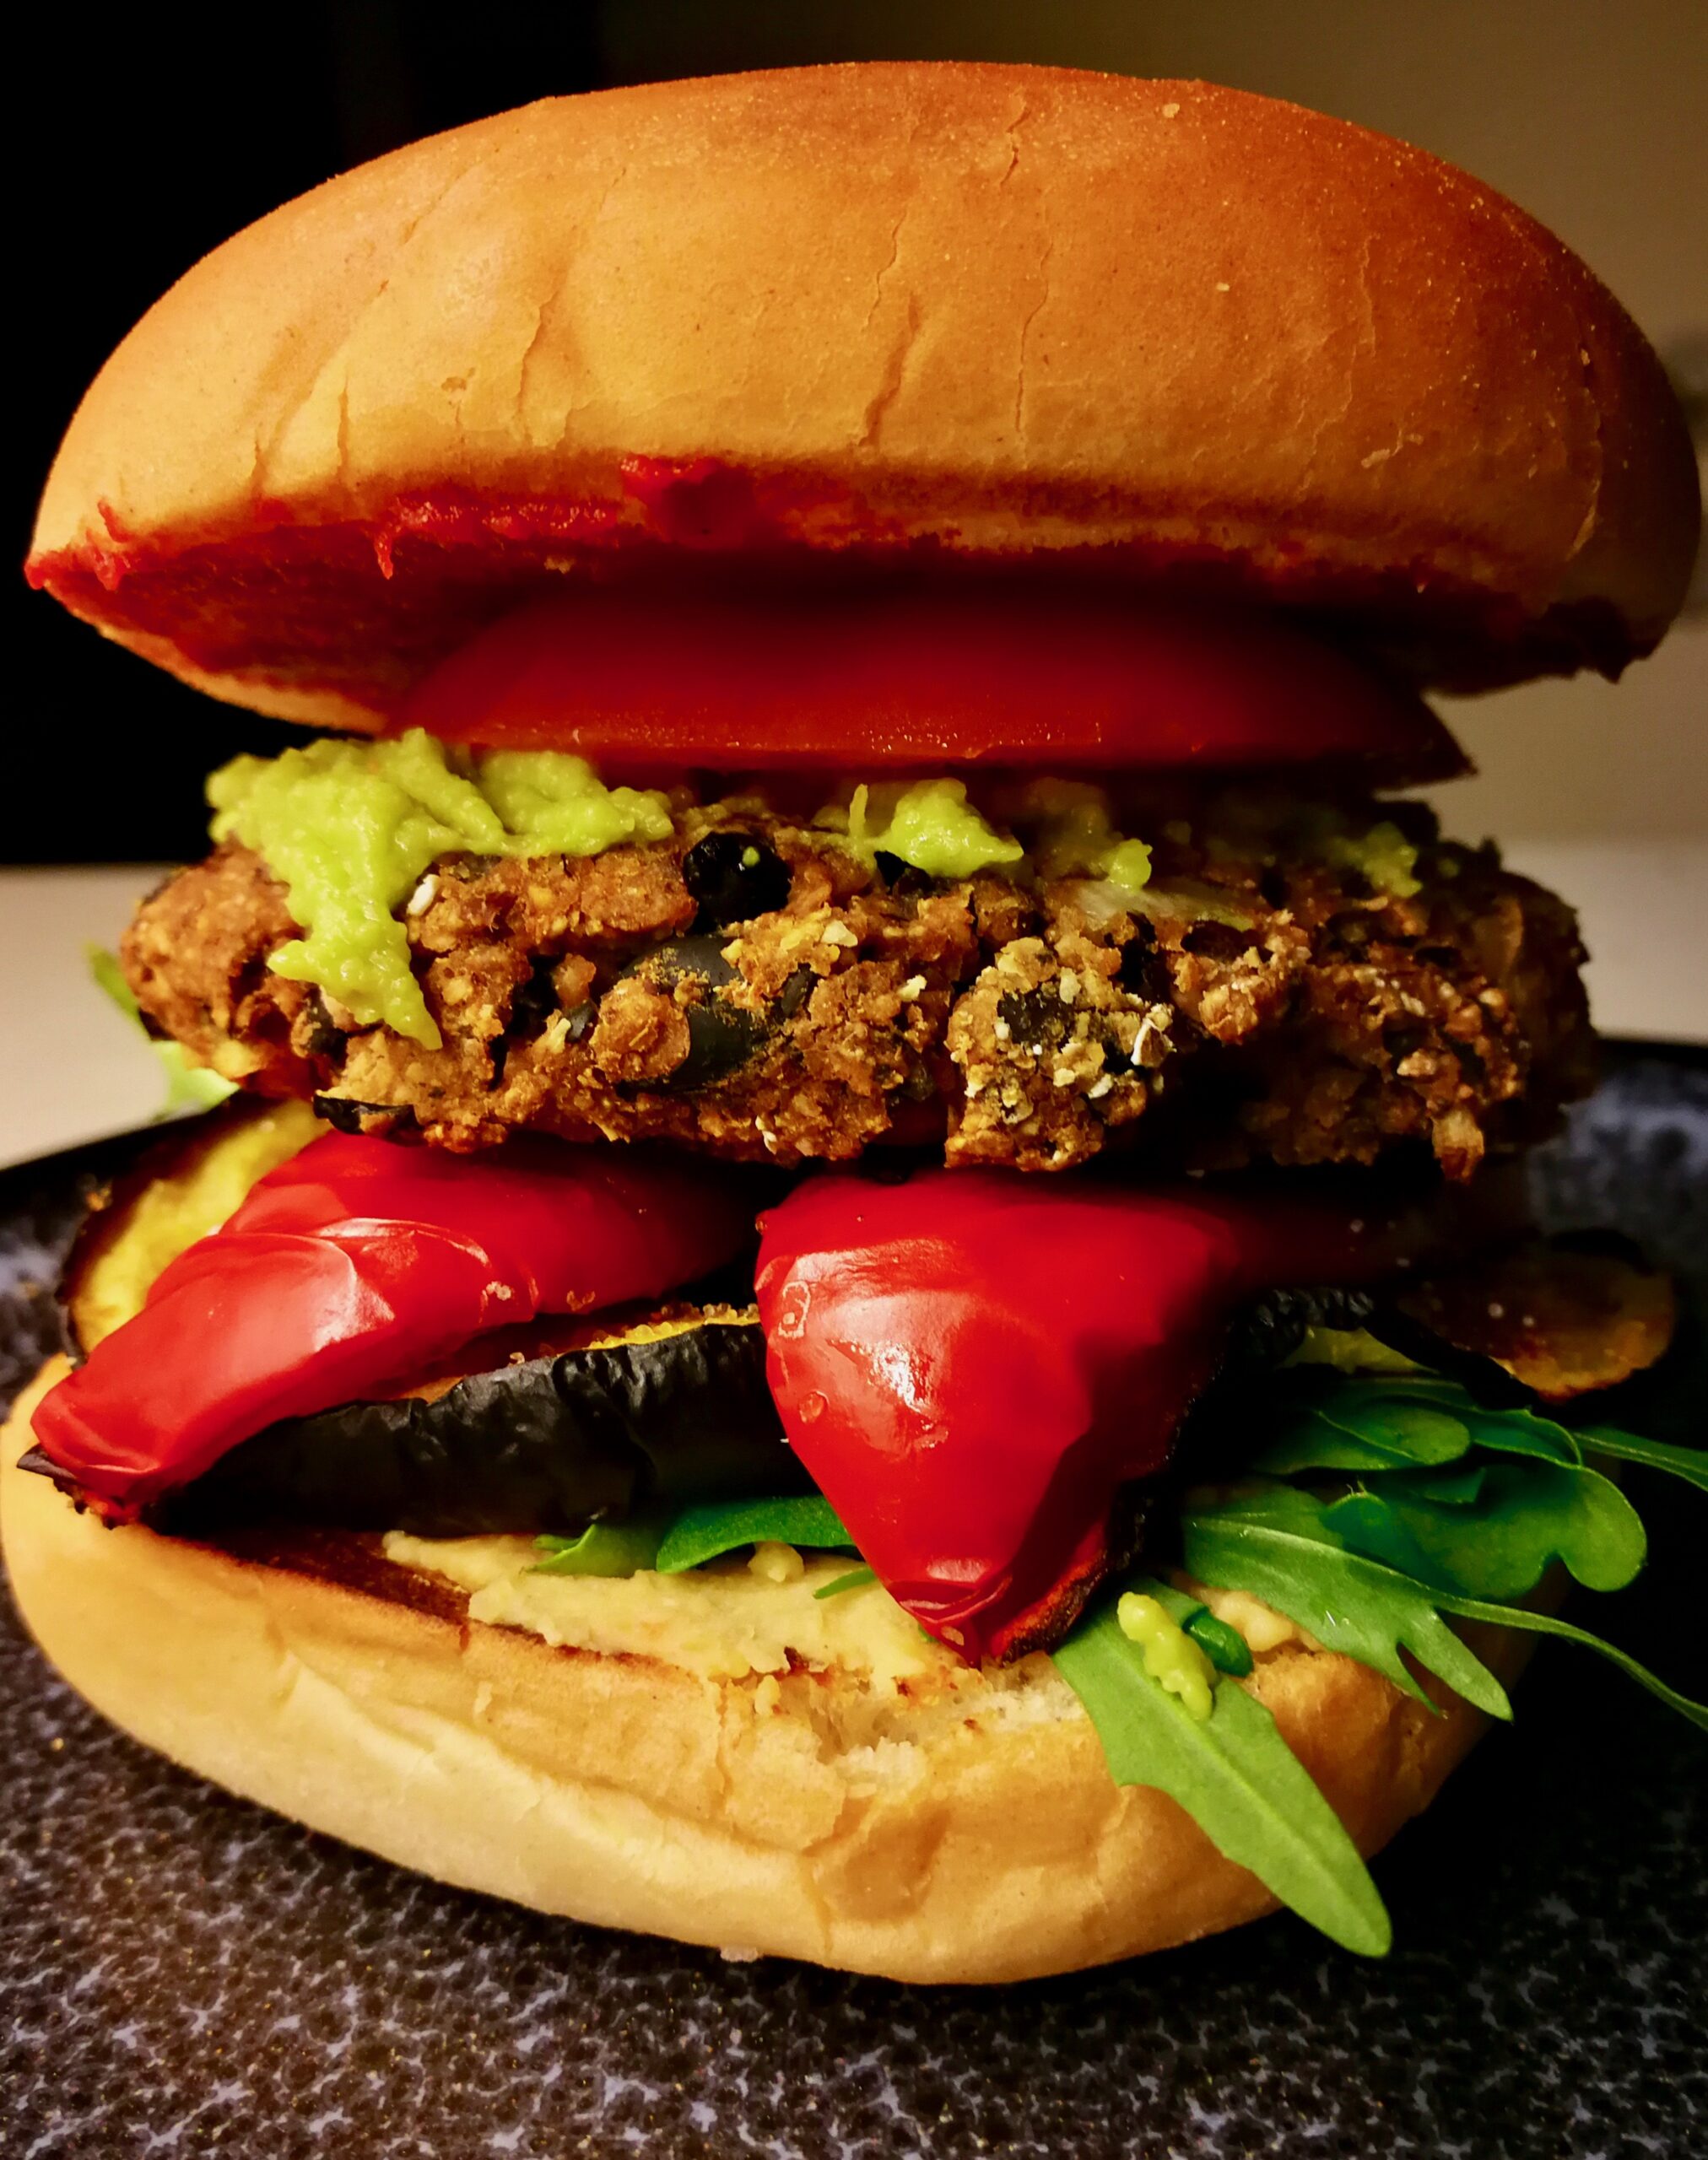 großer Burger mit schwarzen Bohnen Patty, Grillgemüse, Rucola und Guacamole